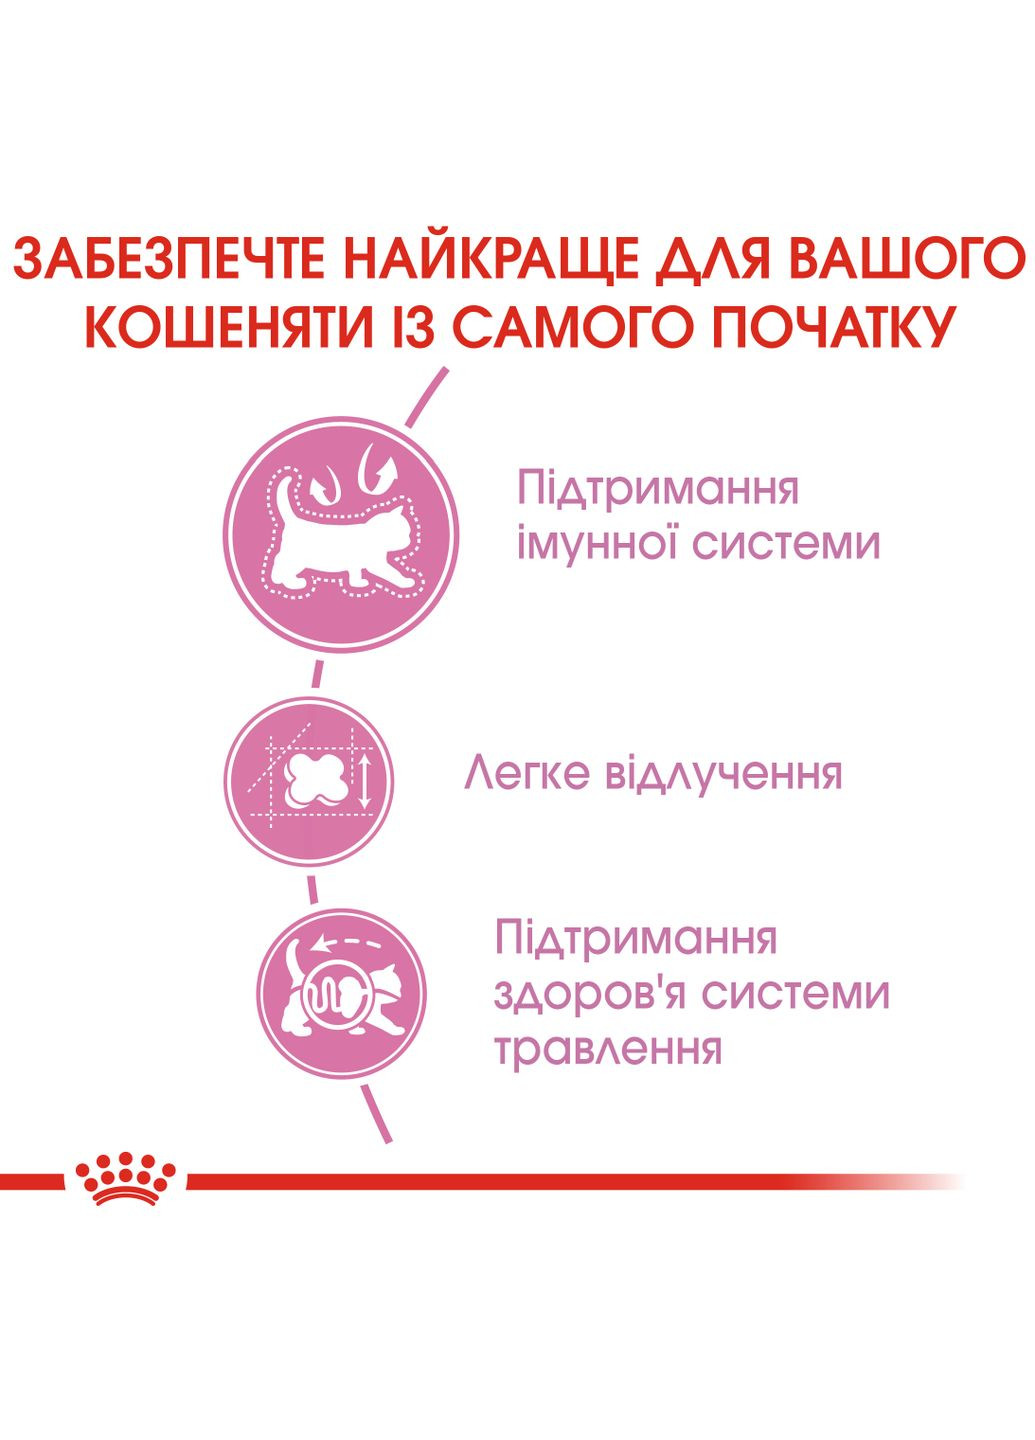 Сухий корм для новонароджених кошенят і кішок Mother & Babycat 2 кг (3182550707312) (2544020) Royal Canin (279568552)